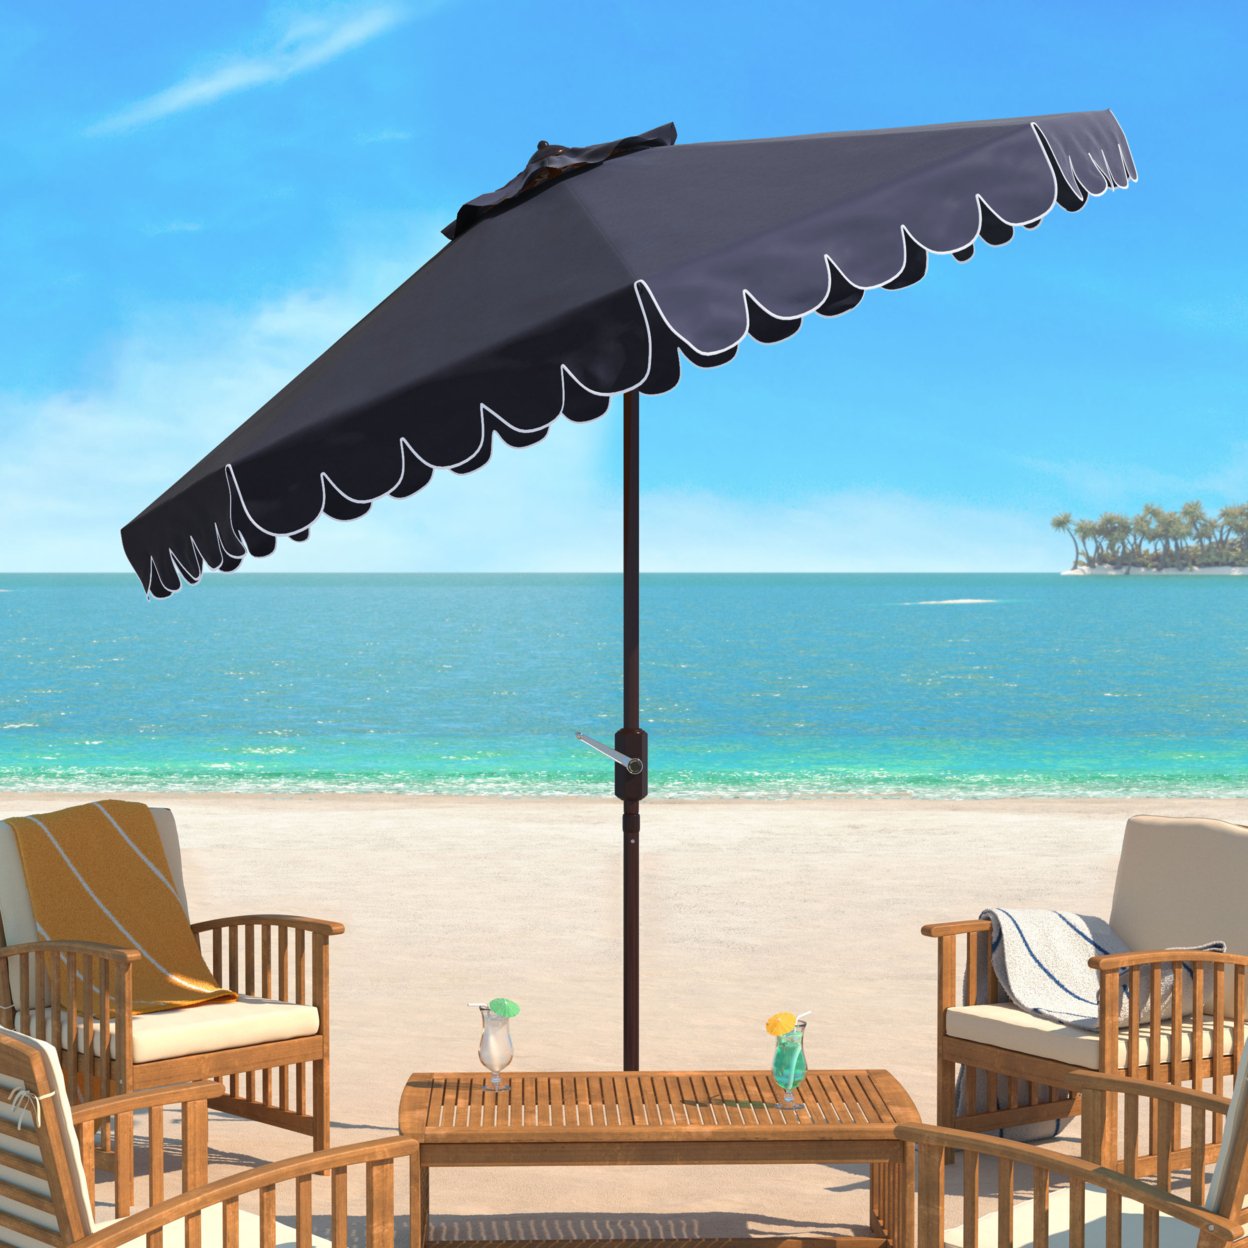 SAFAVIEH Outdoor Collection Venice Single Scallop 9-Foot Tilt Umbrella Navy/White